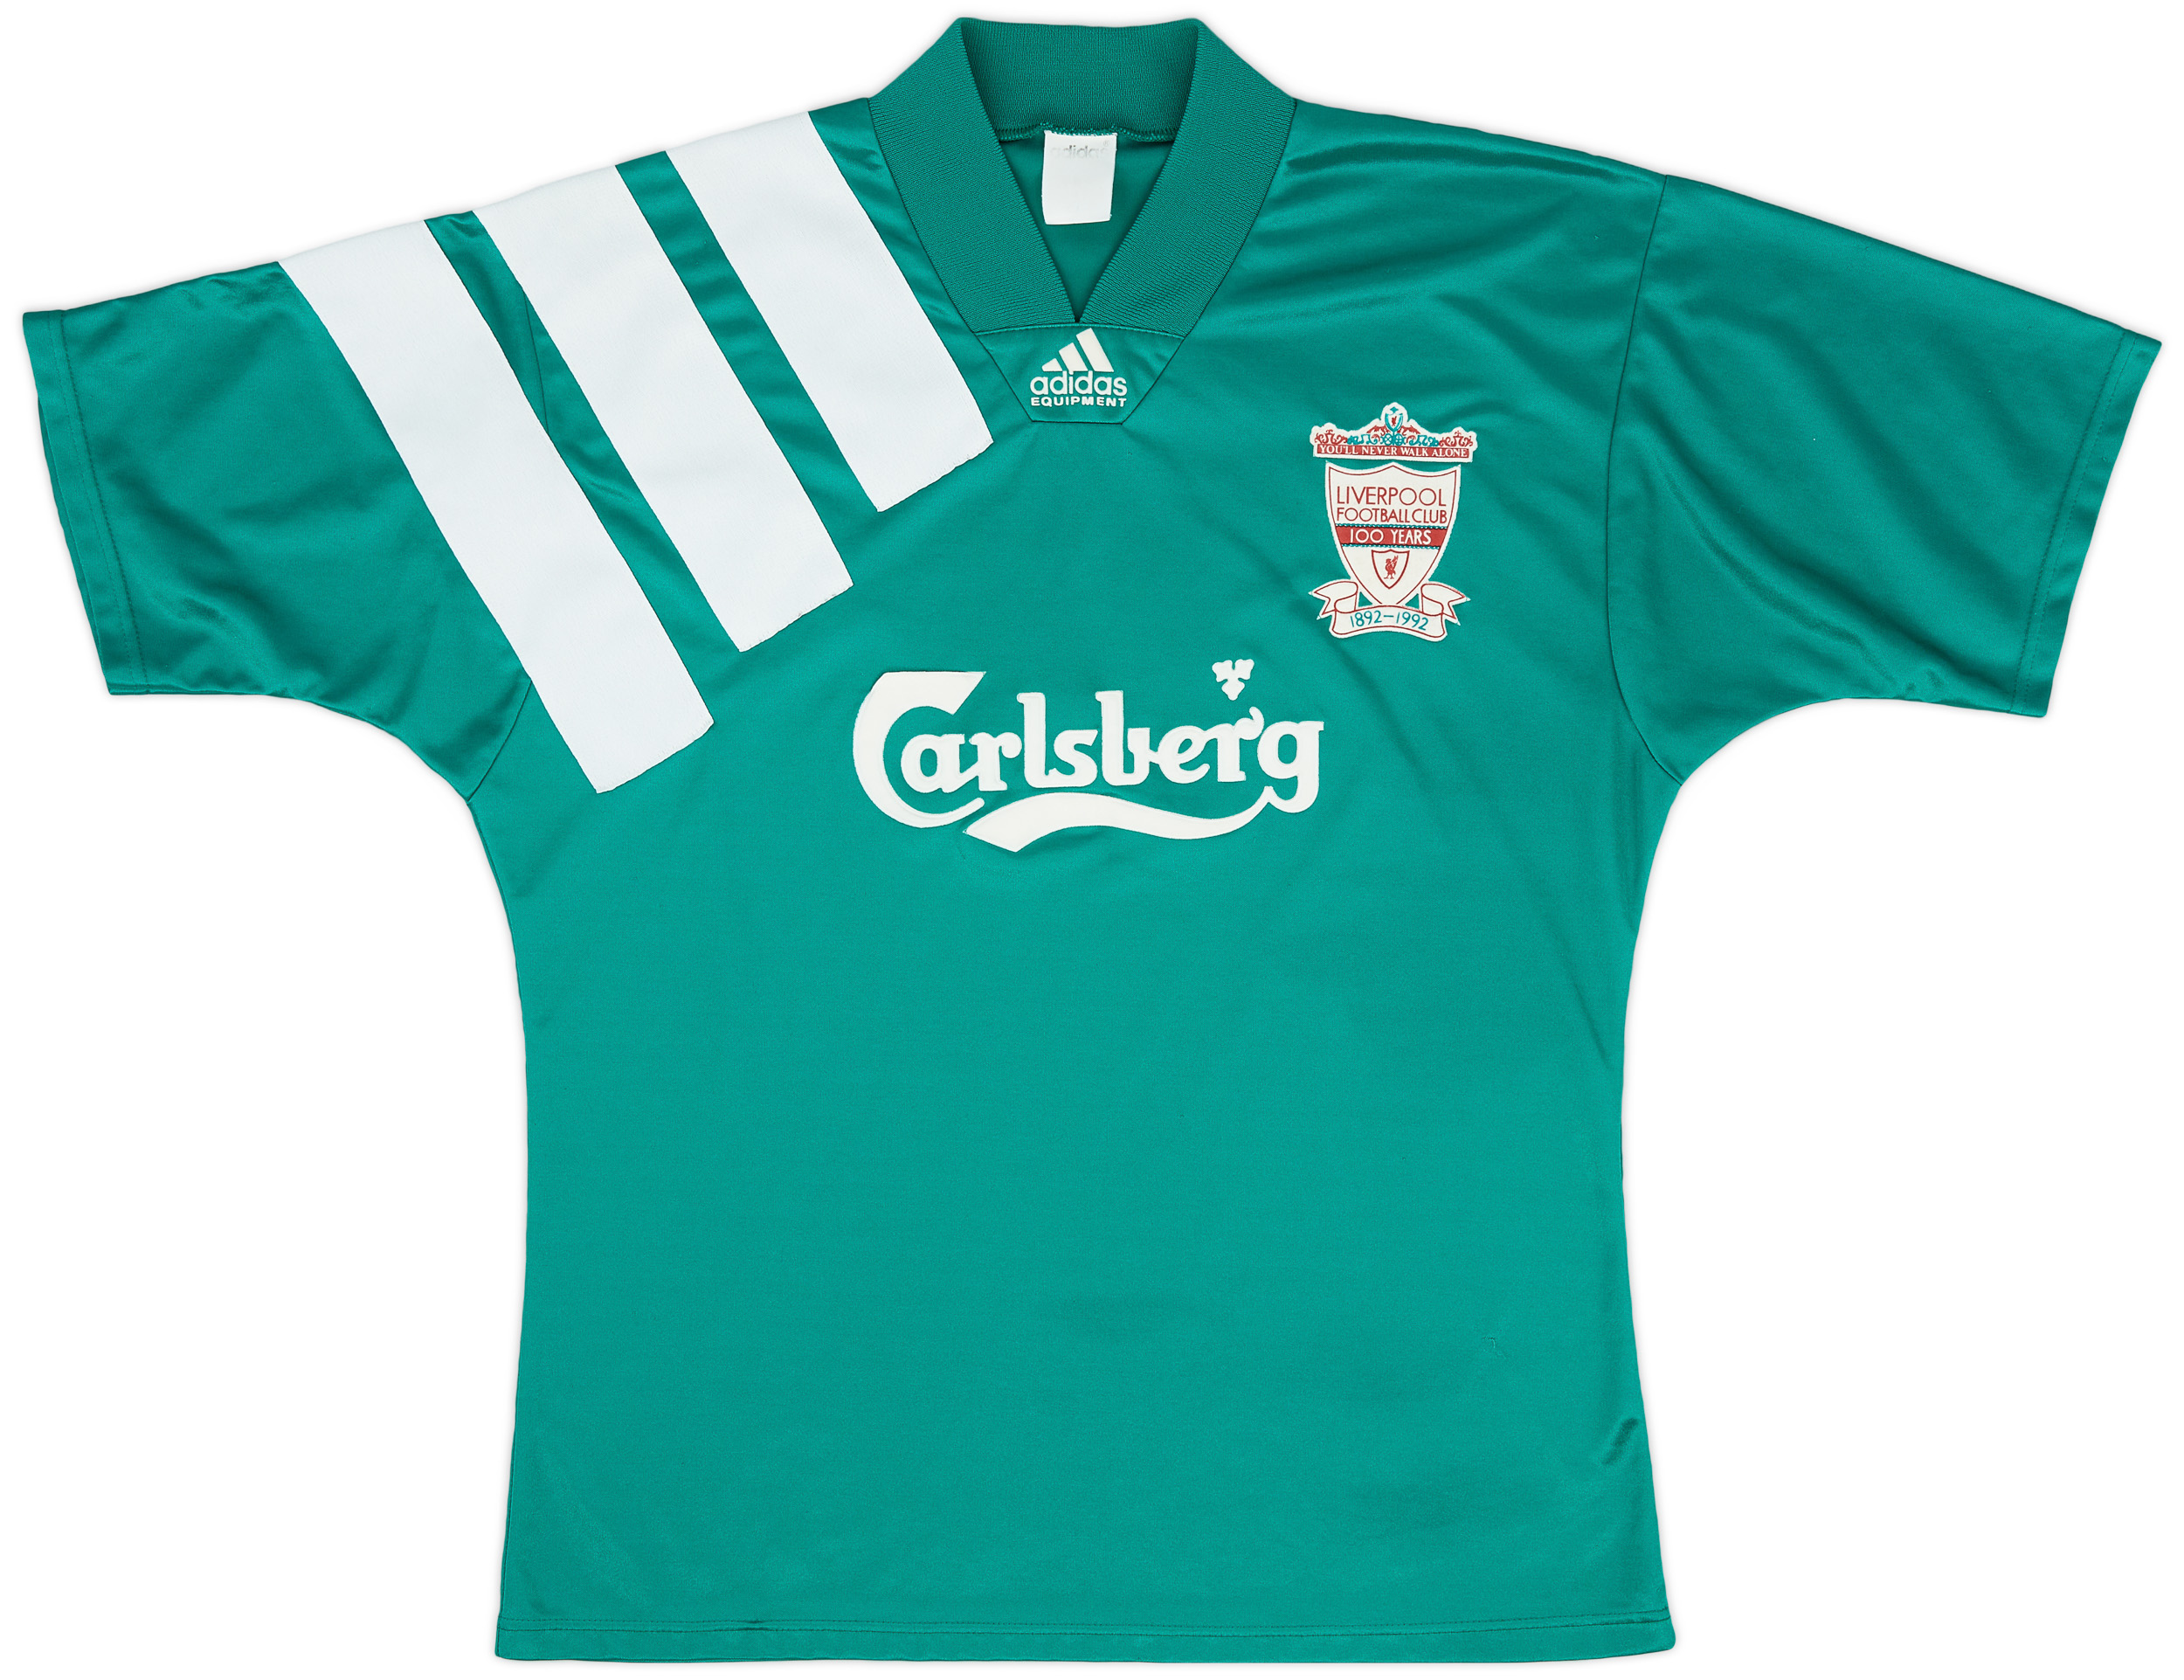 1992-93 Liverpool Centenary Away Shirt - 9/10 - ()